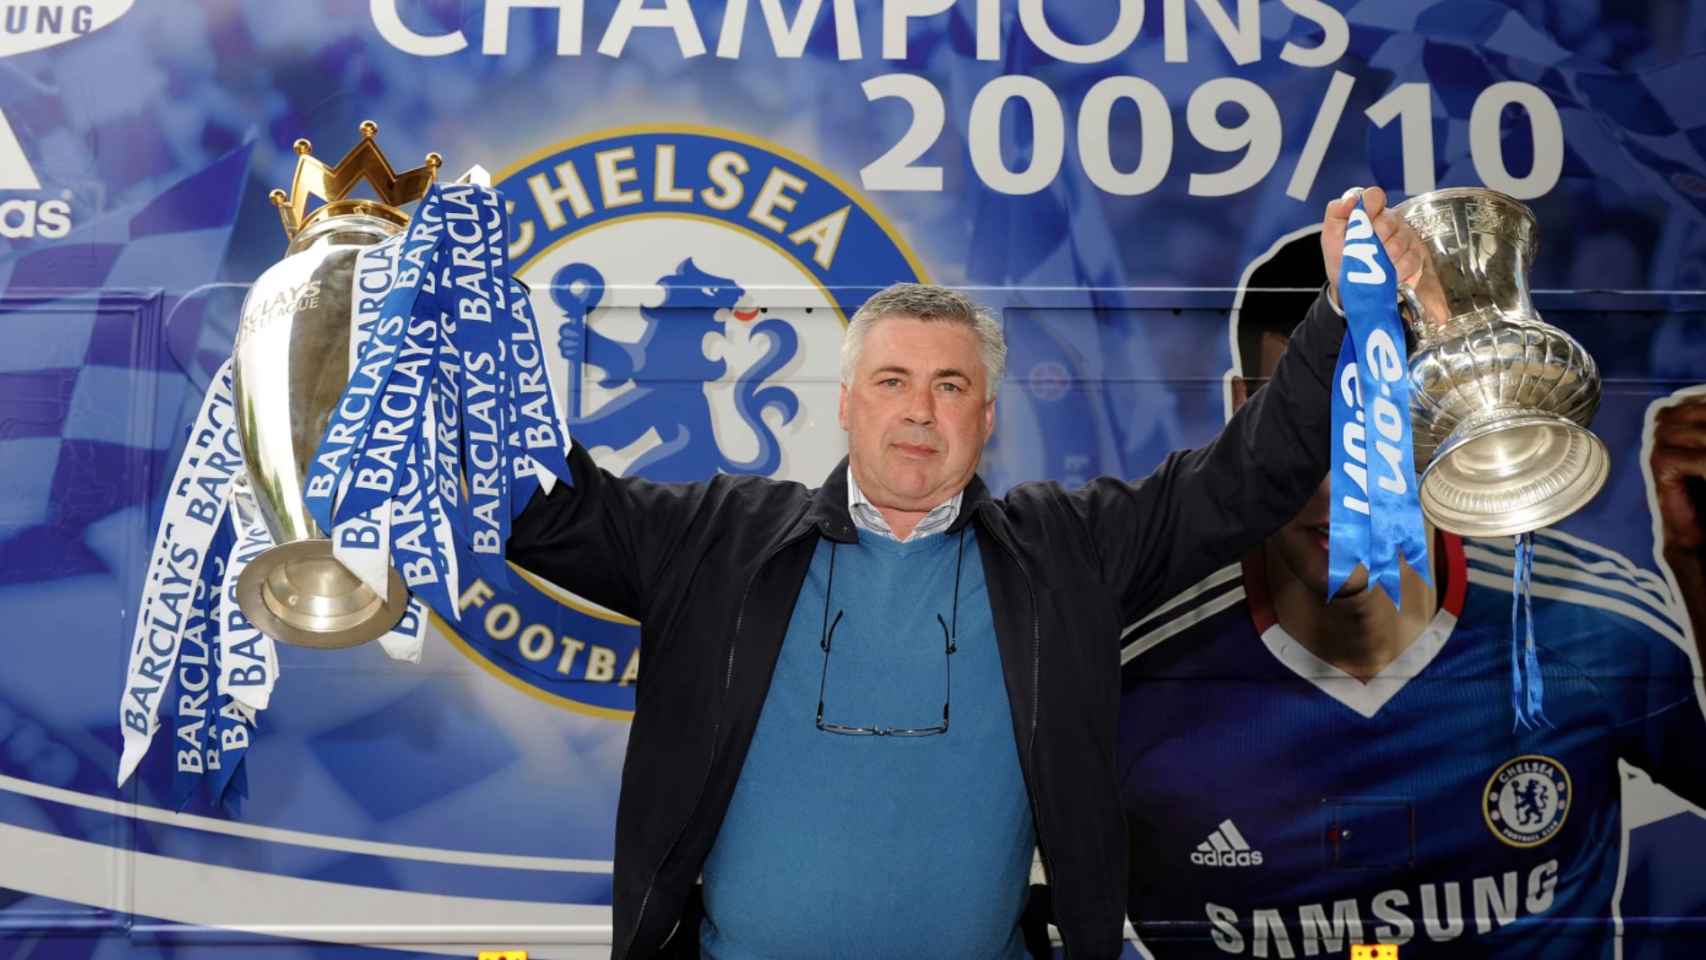 Ancelotti con los dos títulos que ganó en el Chelsea, Premier League y FA Cup